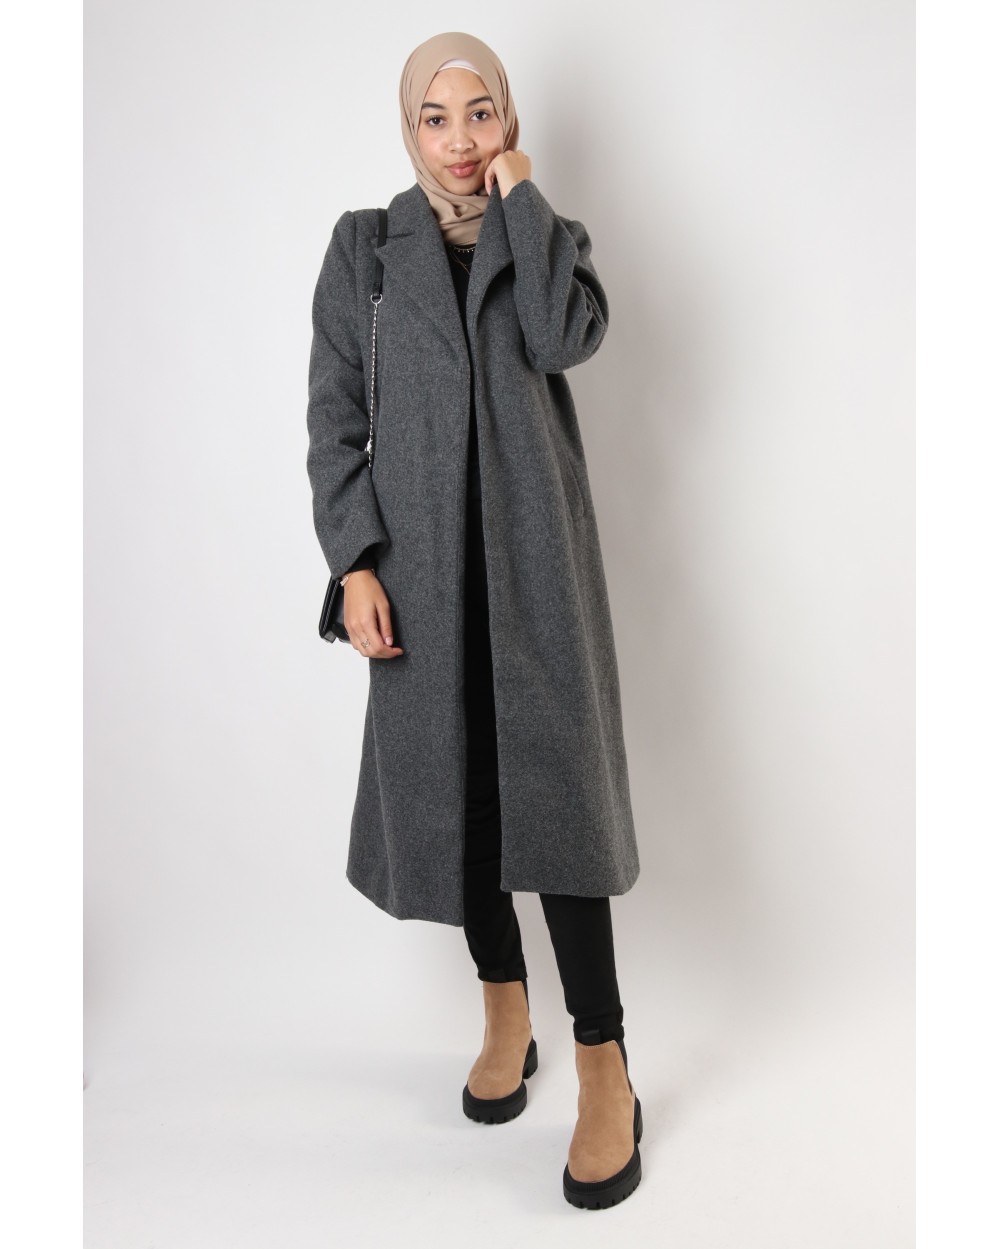 Maxilos mid-length coat